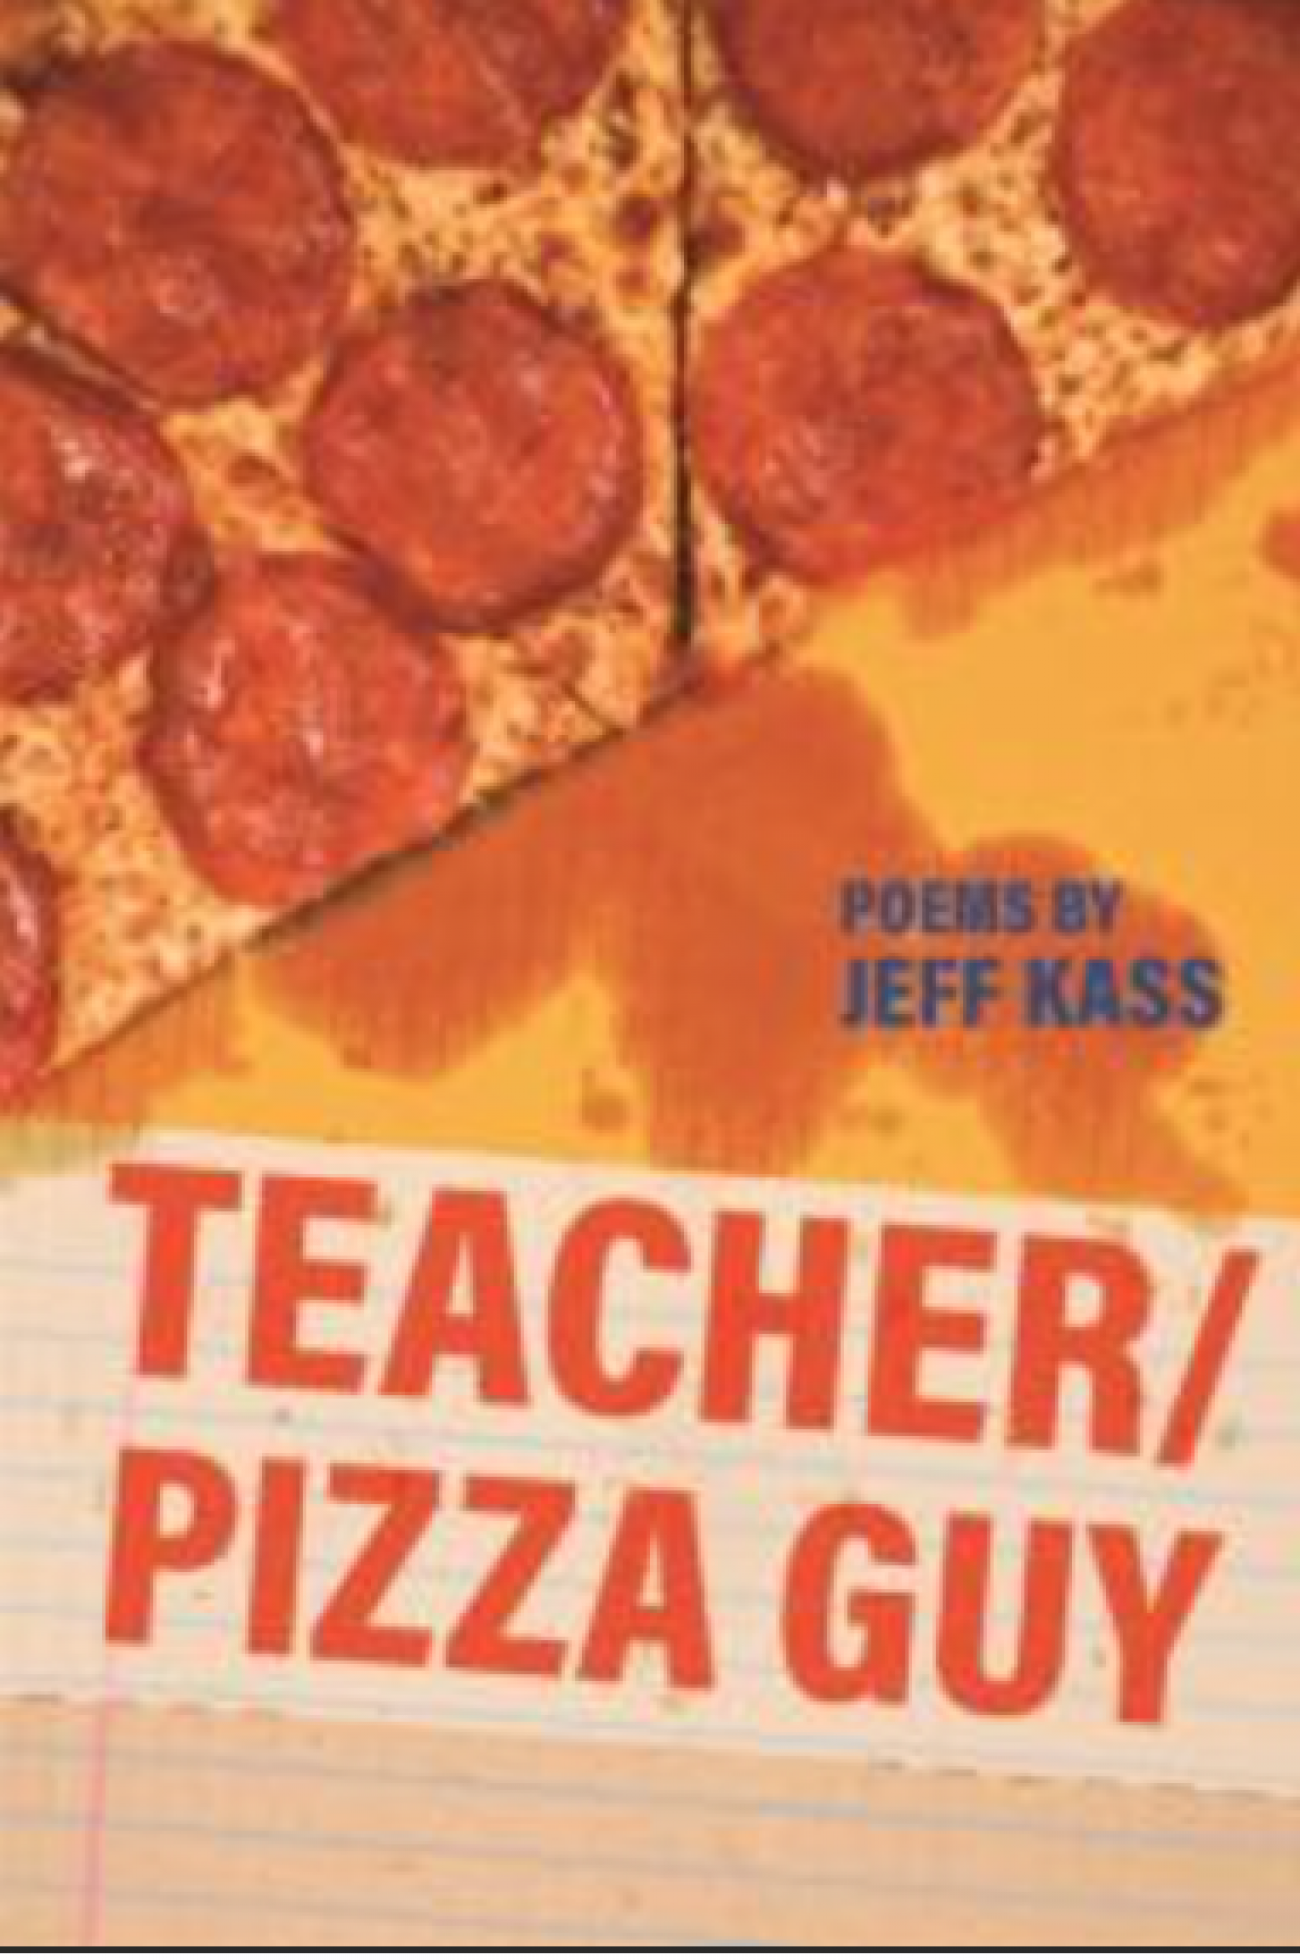 Teacher/Pizza Guy cover